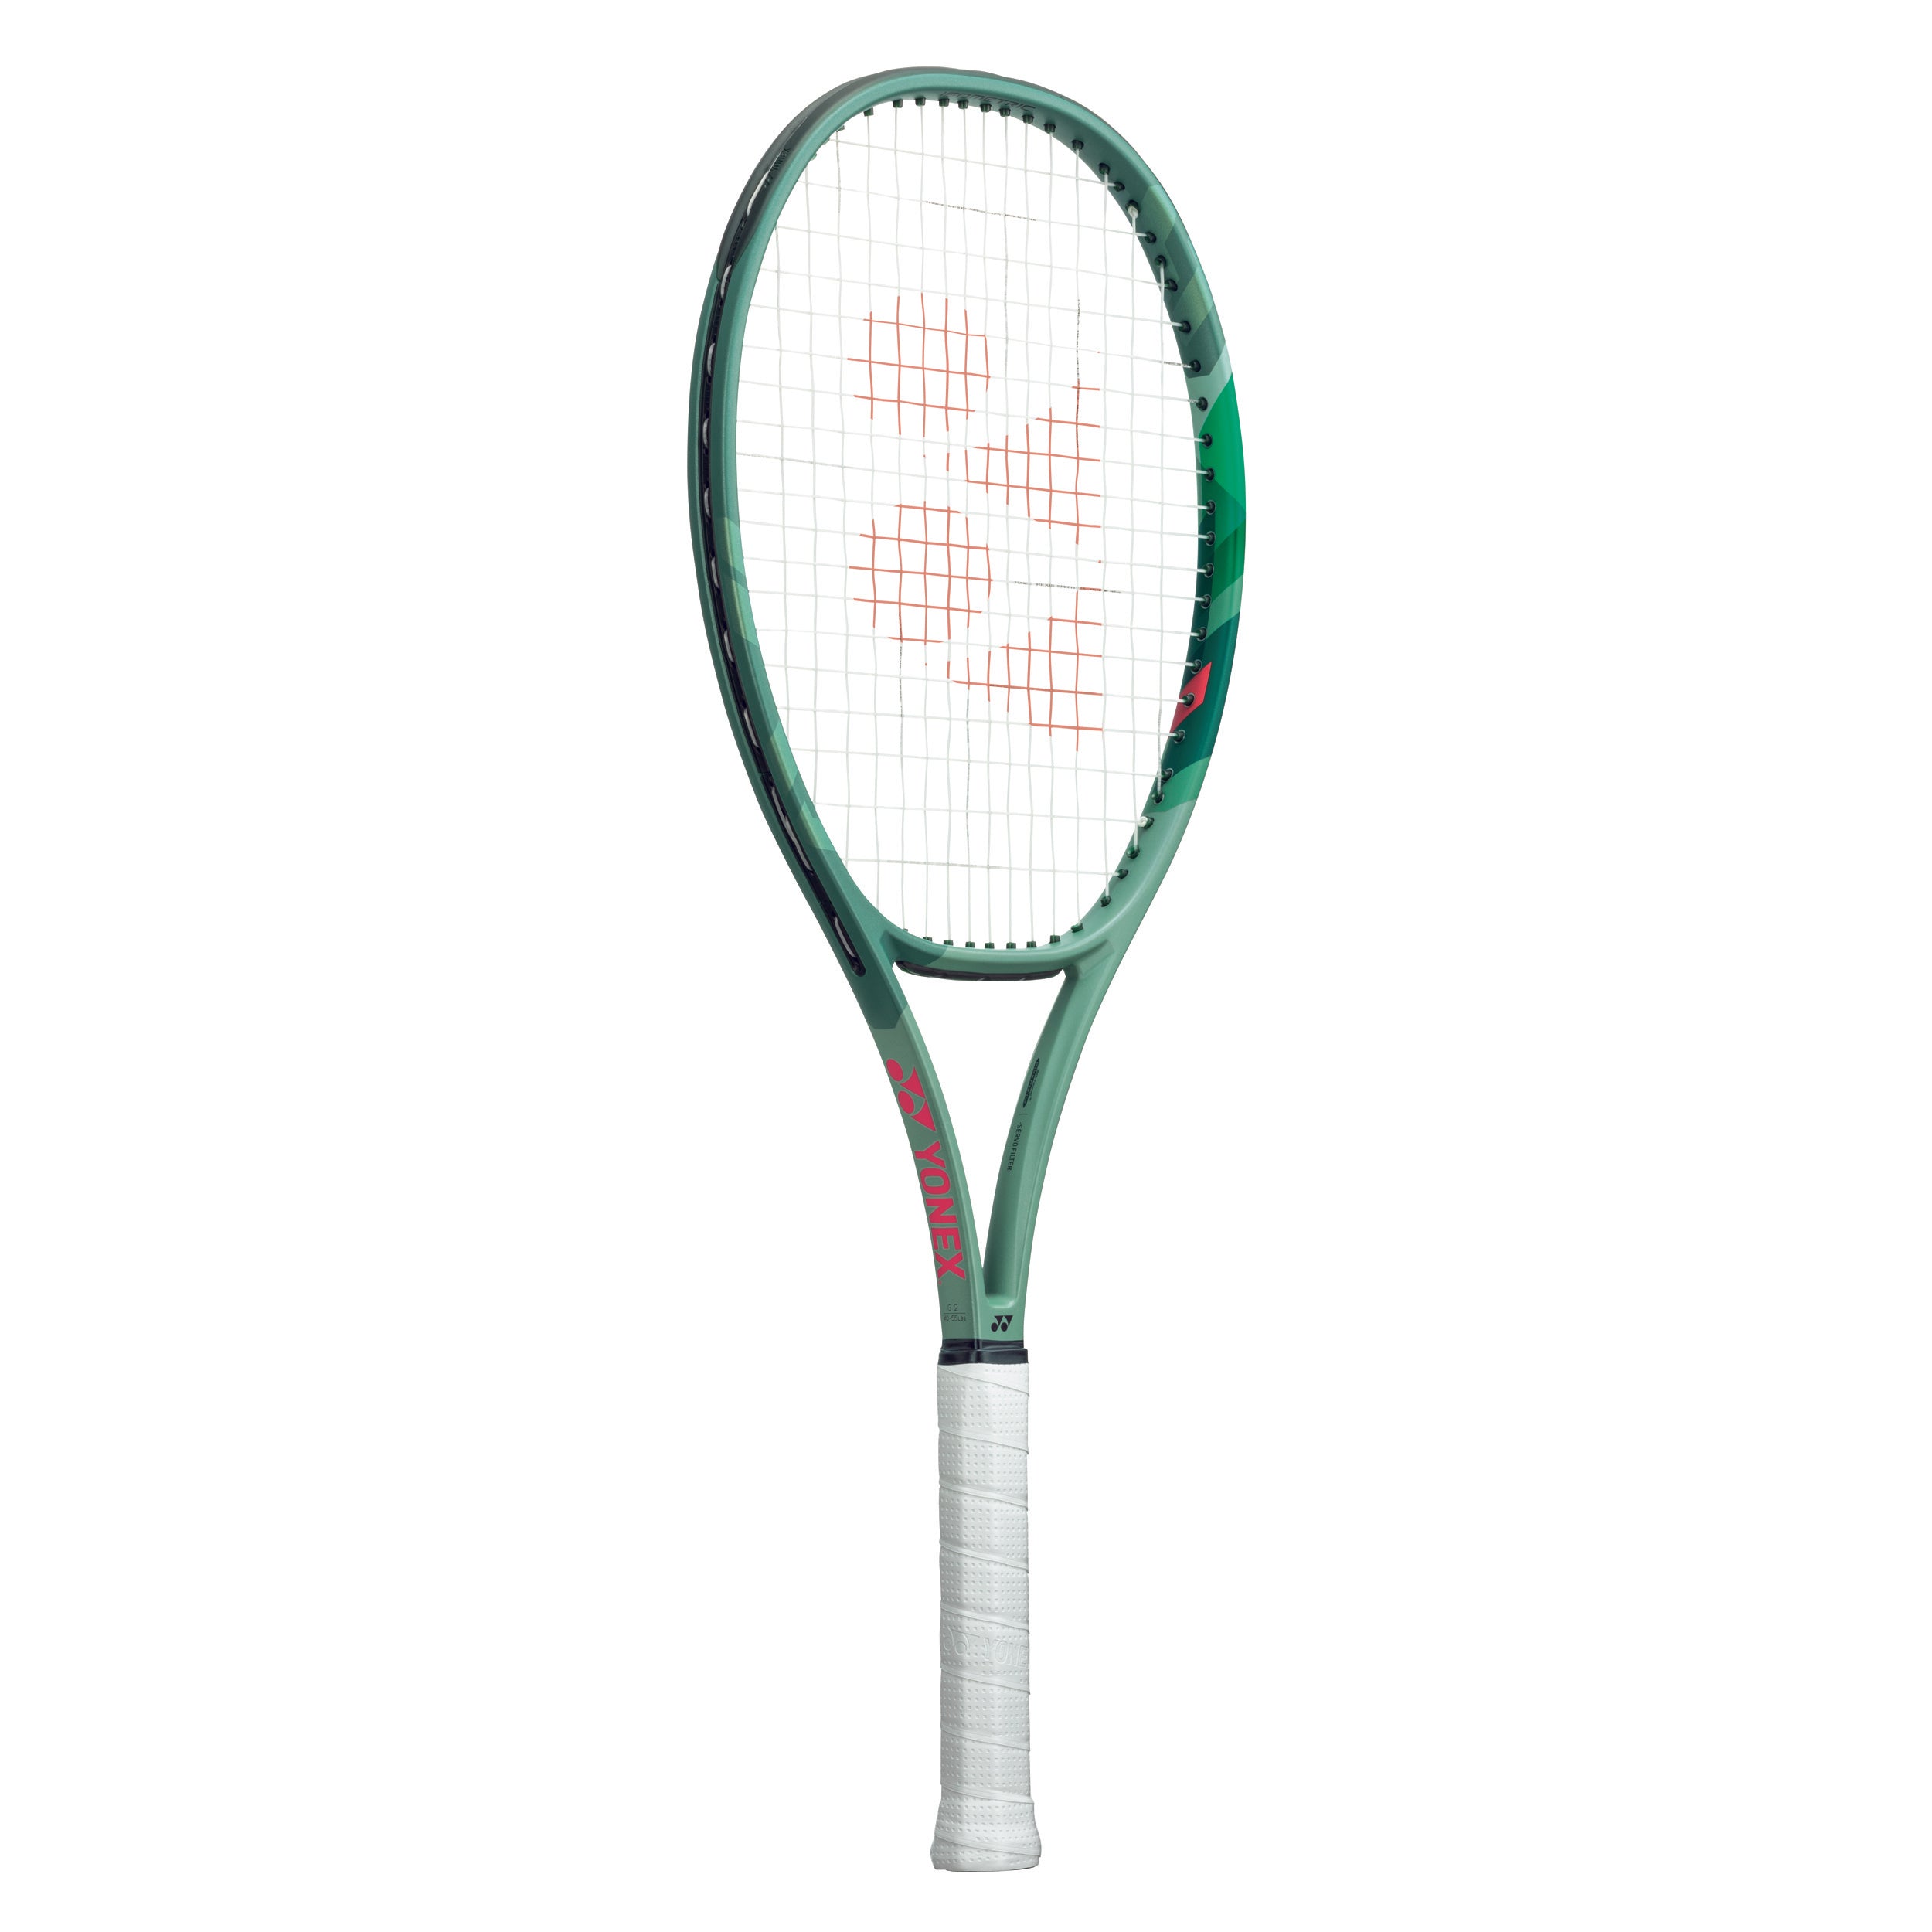 Yonex Percept Tennis Racket